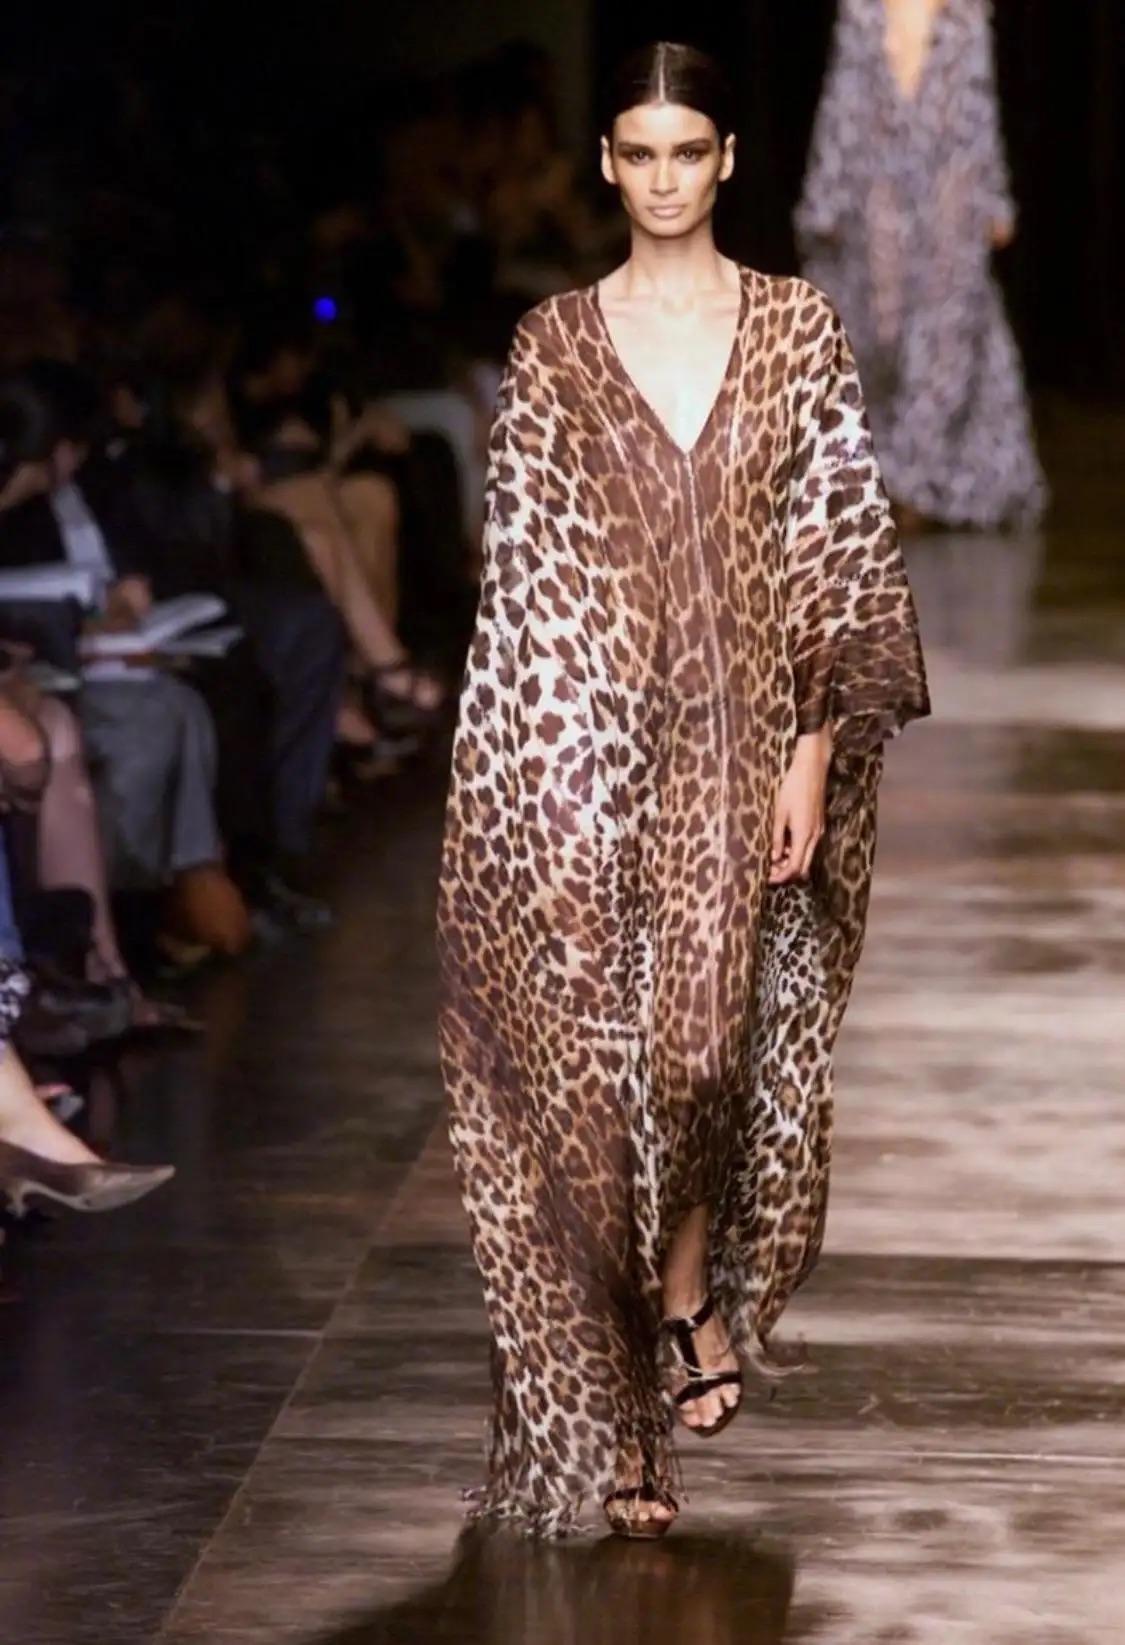 Voici une robe à imprimé léopard de la collection Yves Saint Laurent Rive Gauche, créée par Tom Ford pour la saison printemps/été 2002. Cette robe présente un décolleté plongeant, un dos ouvert et une traîne impressionnante. L'abondance de tissu est